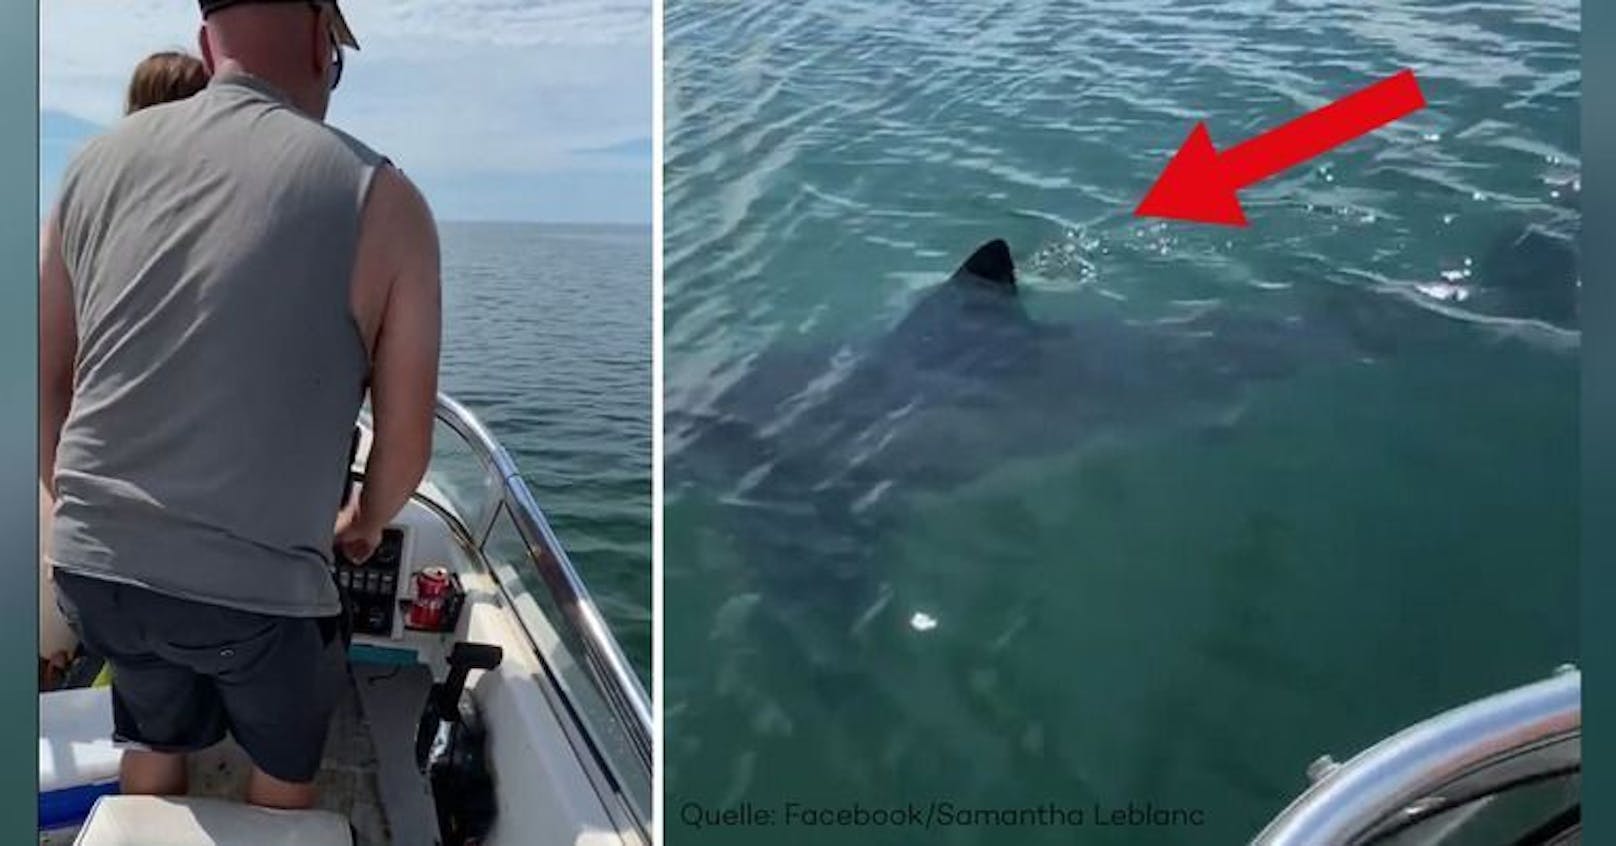 Der Weiße Hai tauchte direkt neben dem Boot auf.